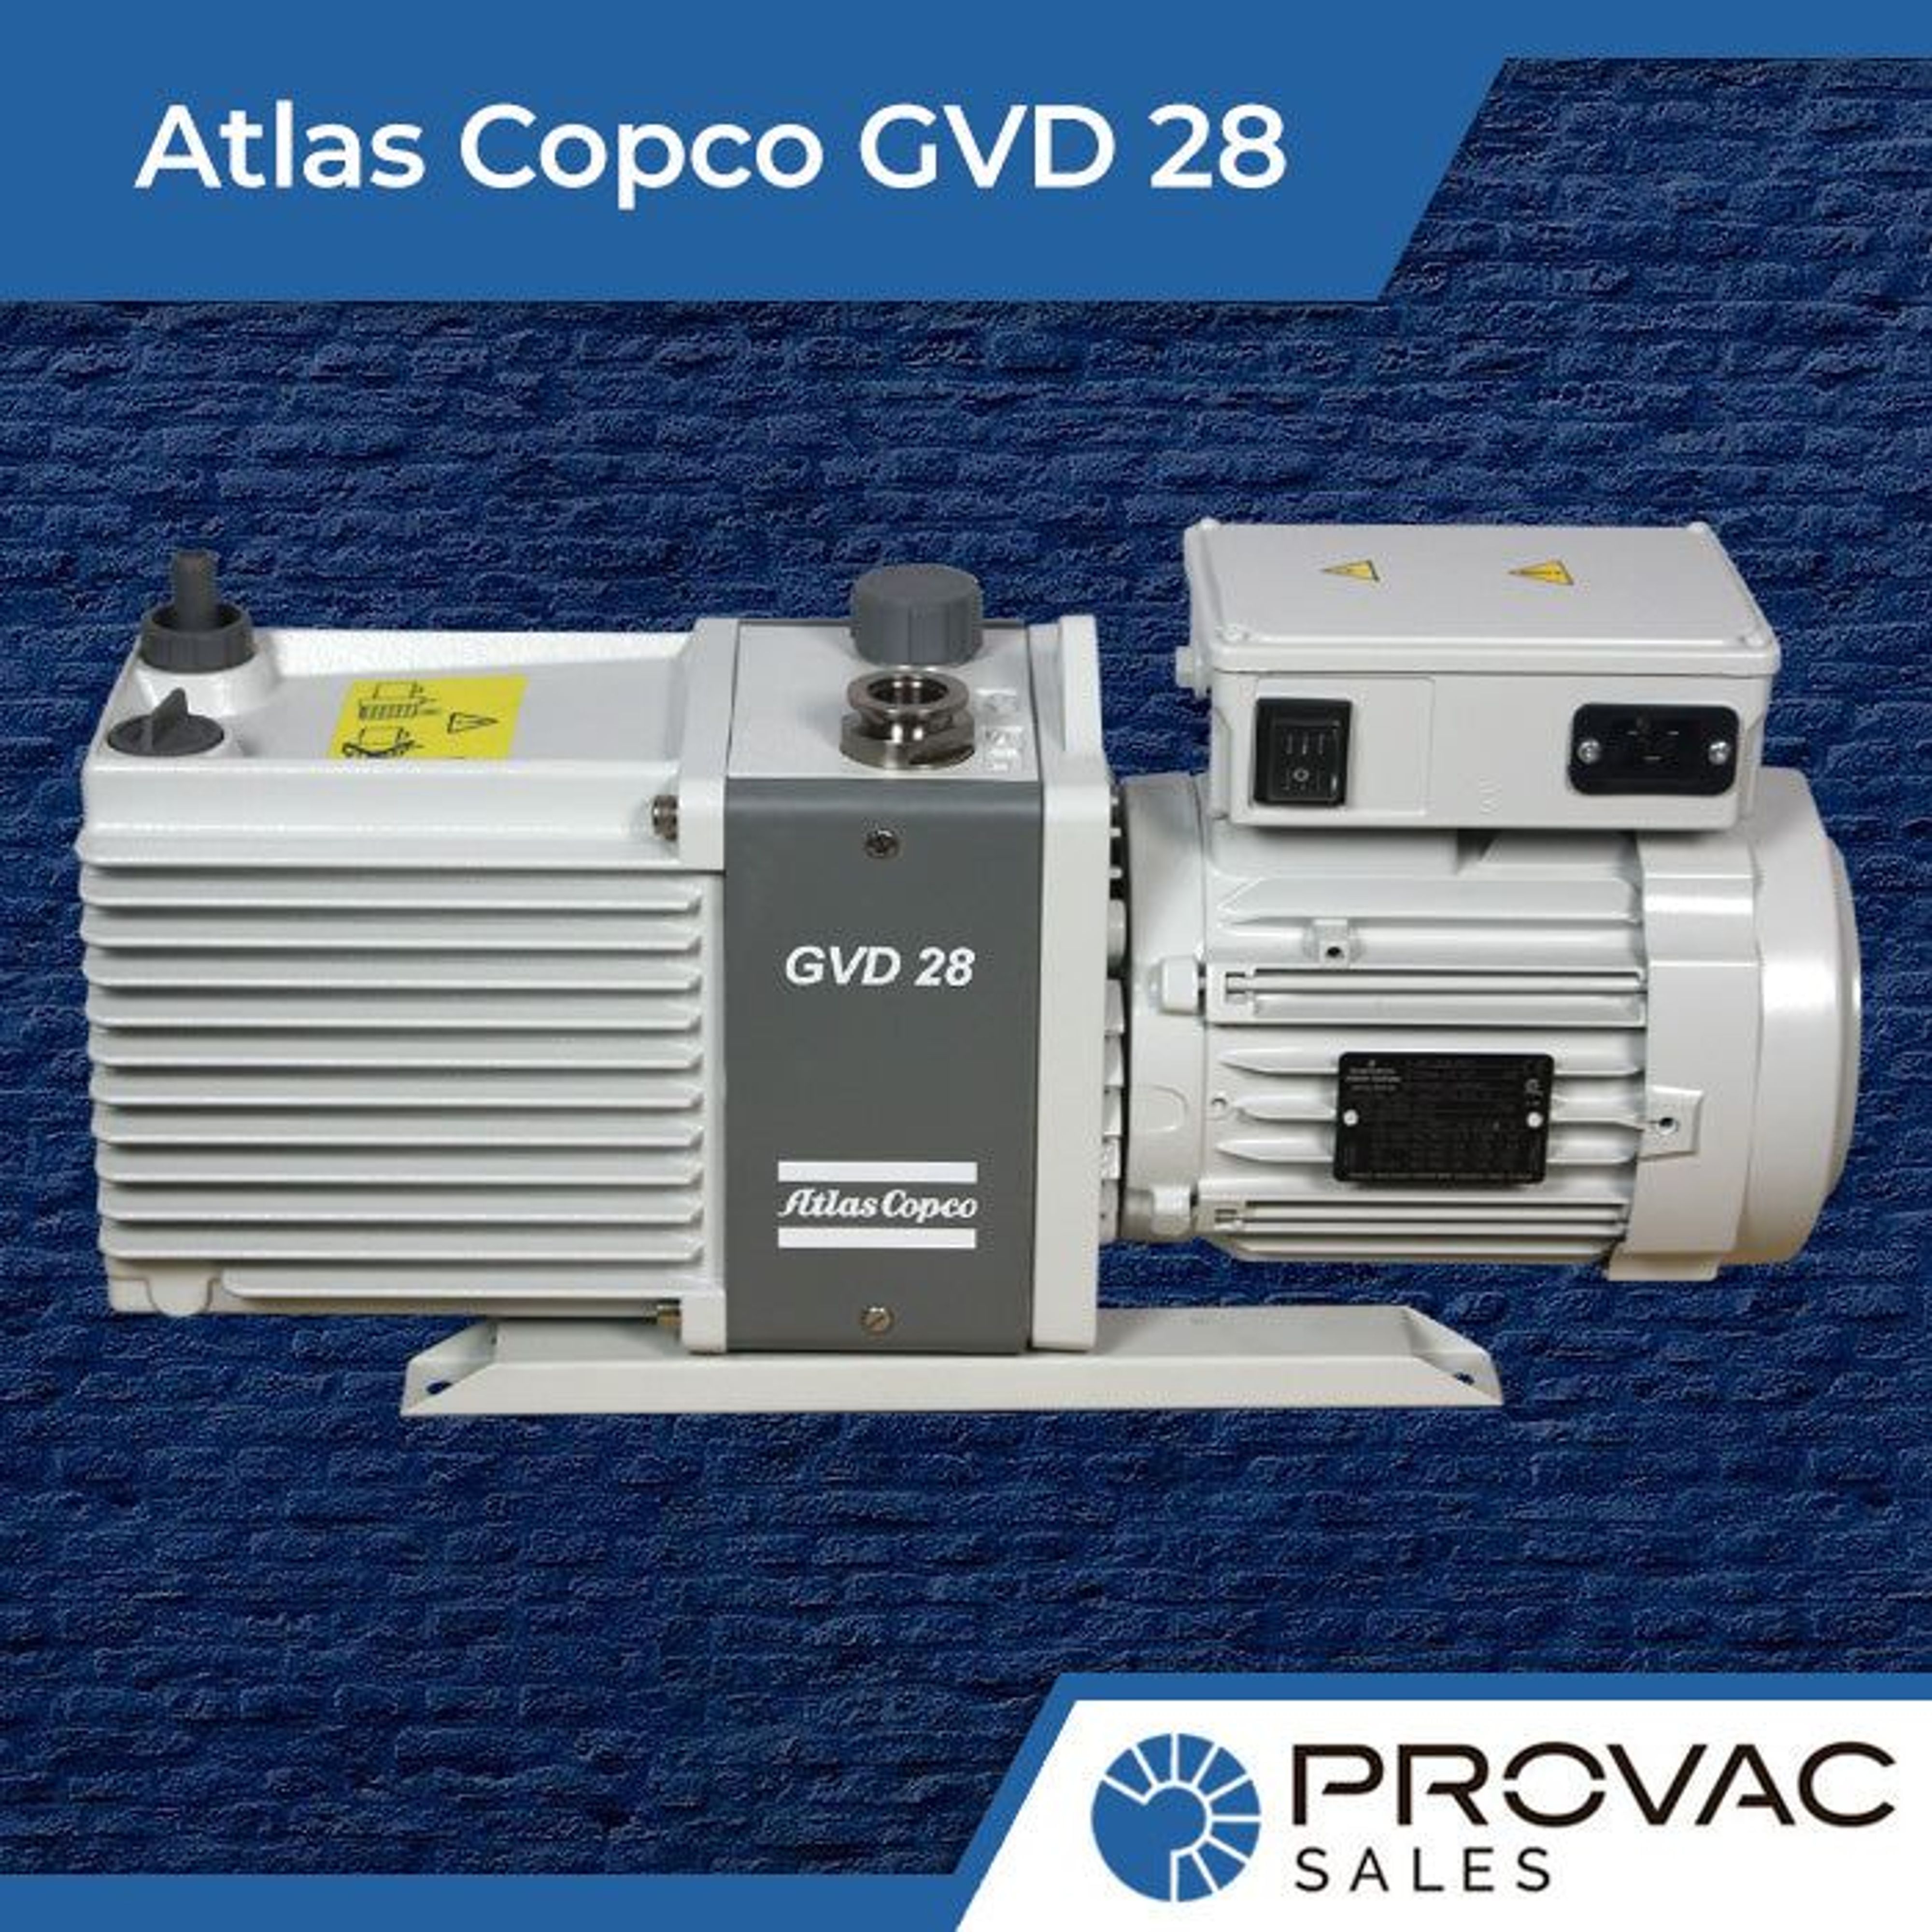 Atlas Copco GVD 28: 22.3 CFM Vacuum Work-Horse Background